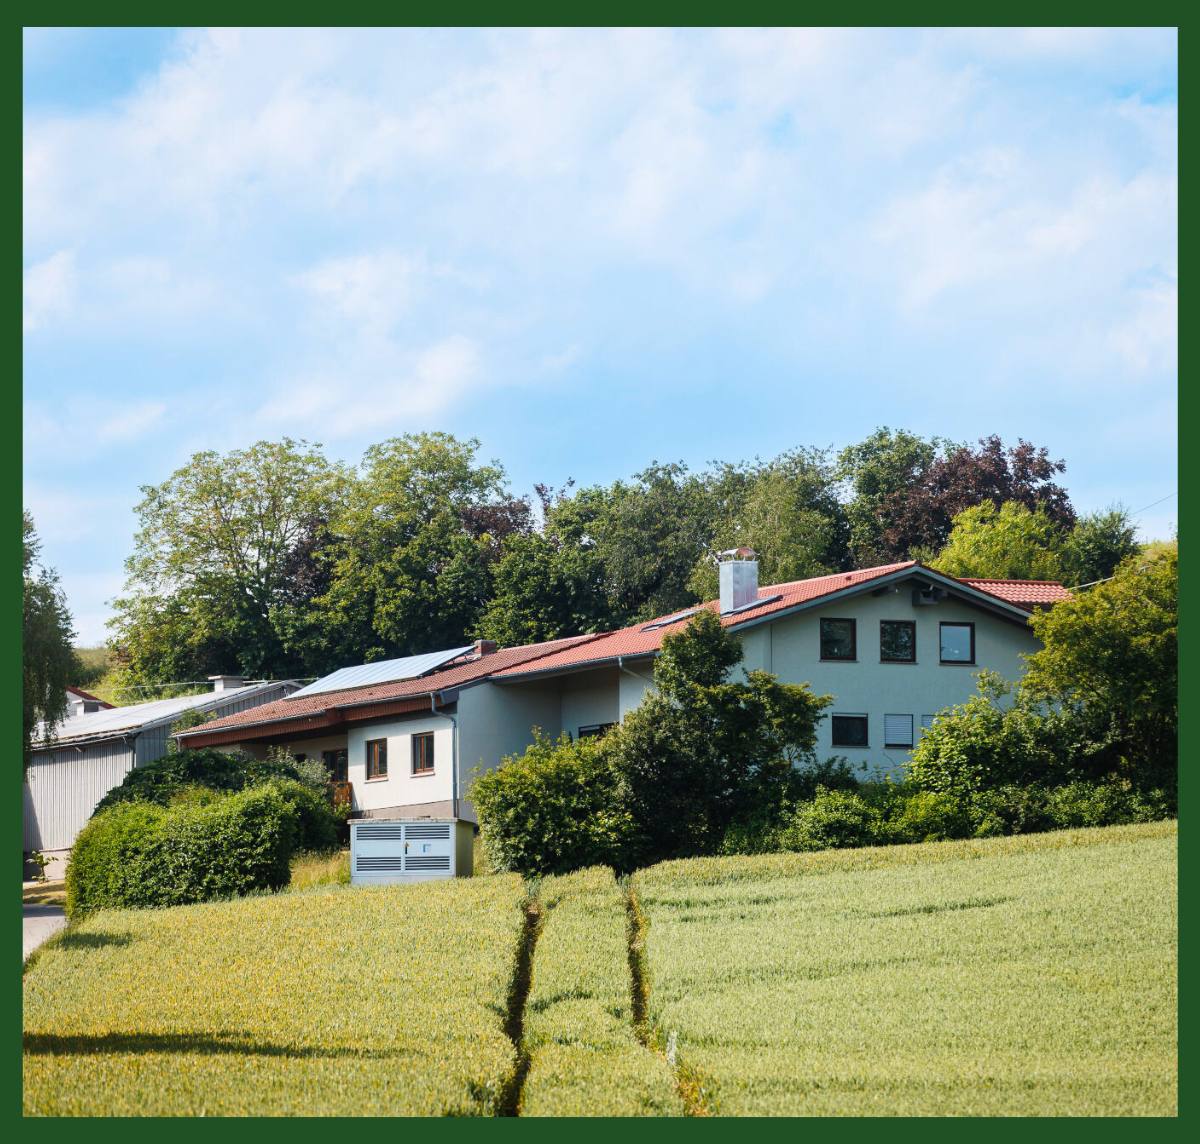 Die Pension und das Gebäude des HBD-Unternehmens, umgeben von grüner Vegetation und Bäumen.